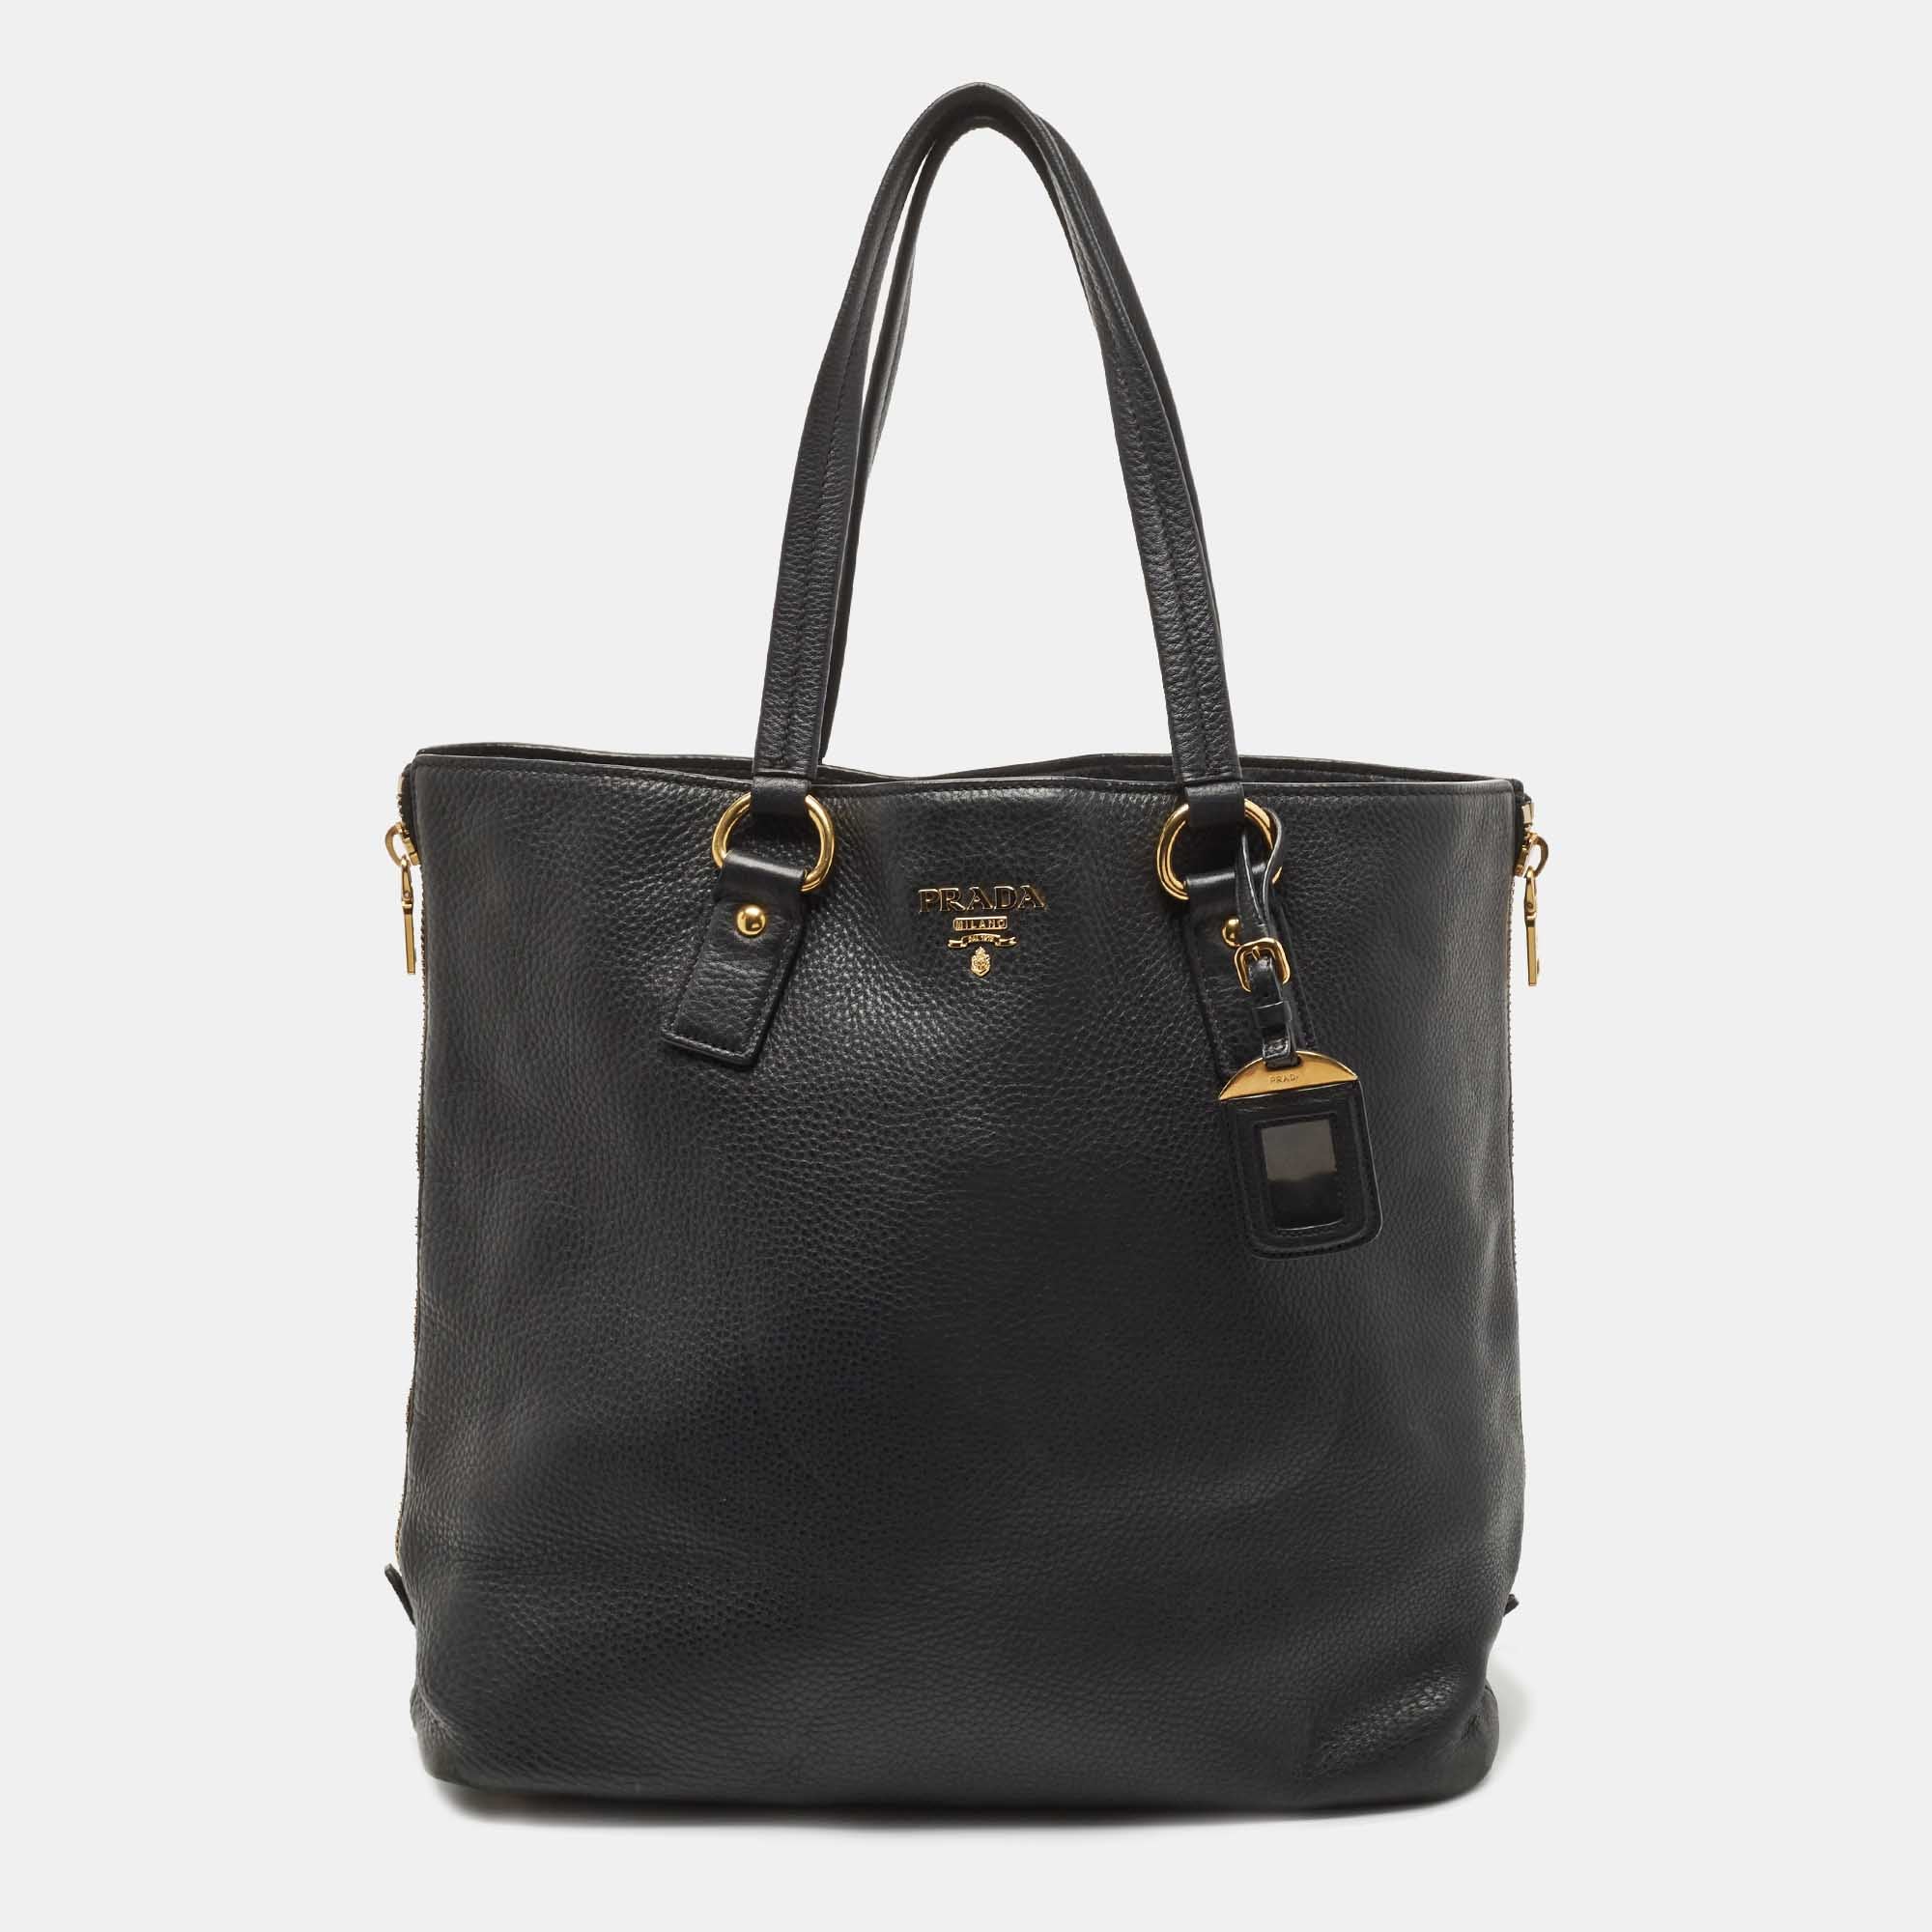 logo-stamp leather tote bag | Prada | Eraldo.com